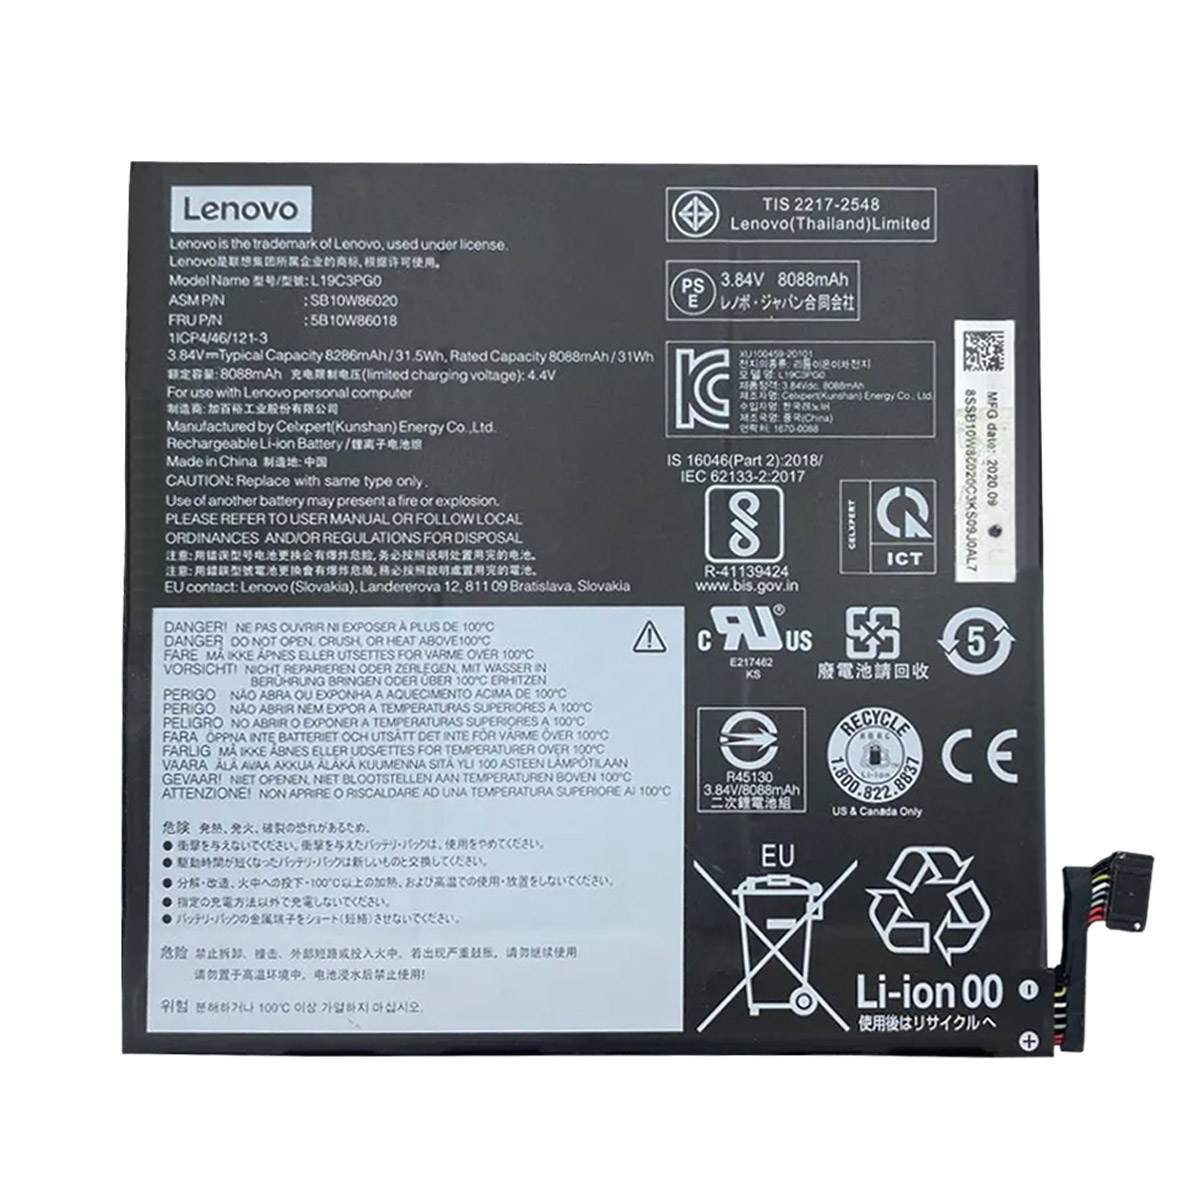 LENOVO-L19M3PG0/L19C3PG0-Laptop Replacement Battery